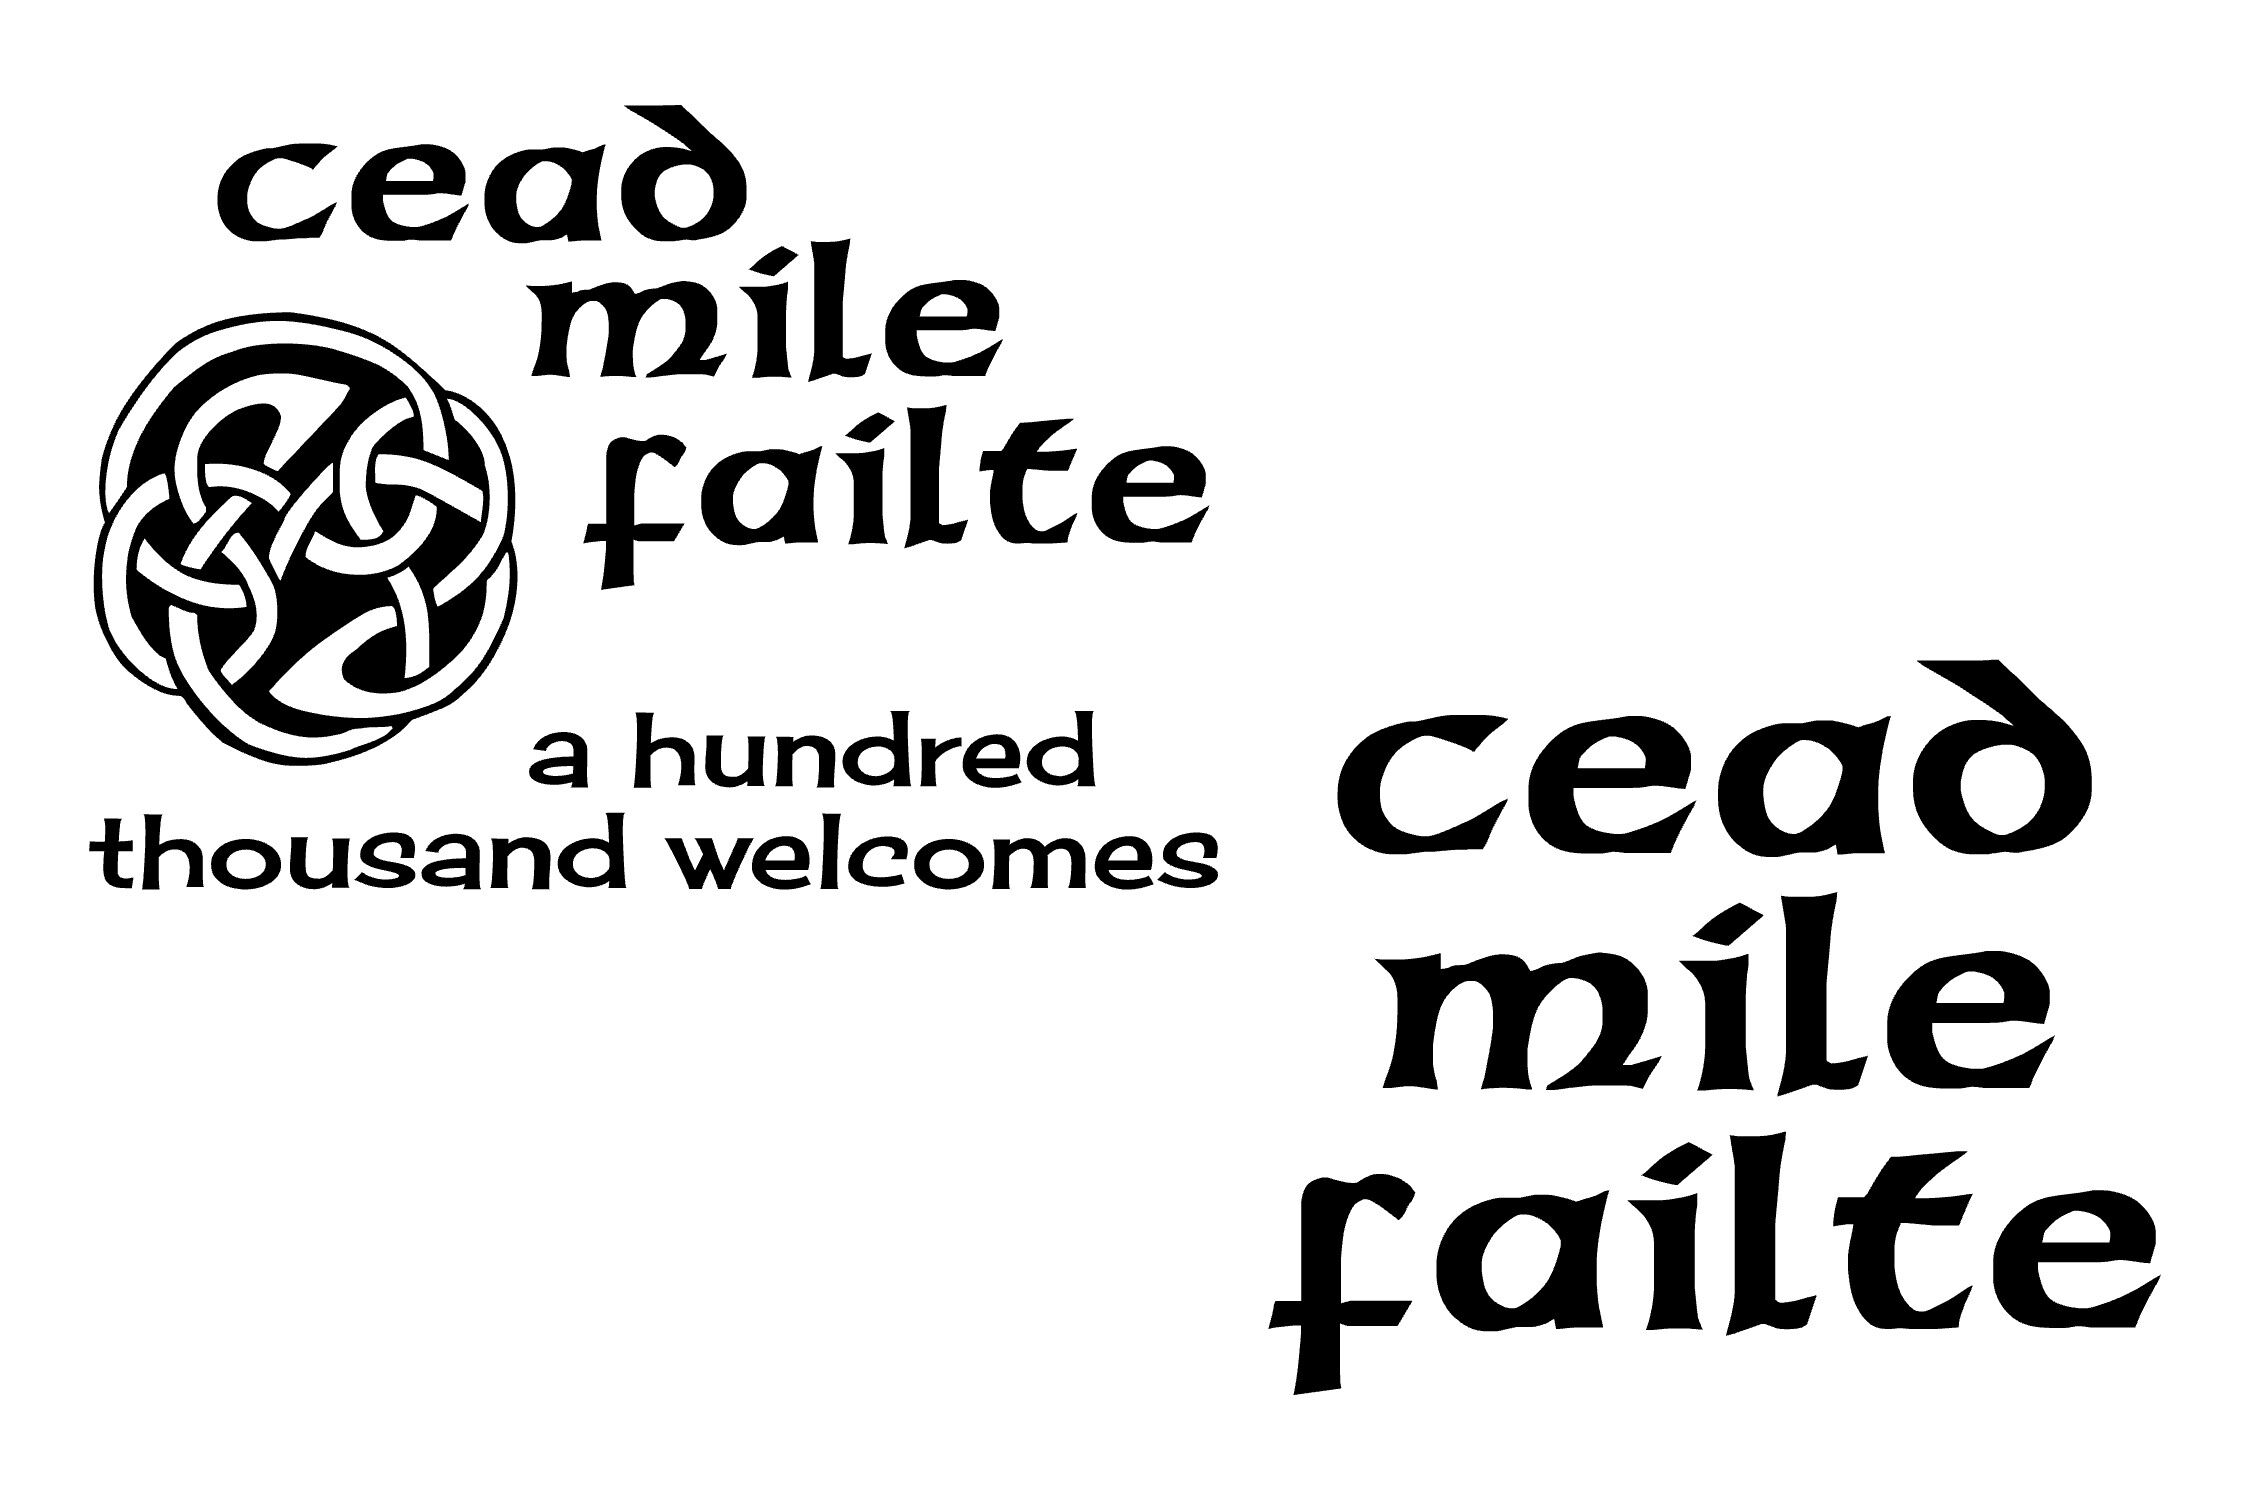 Celtic Welcome Cead Mile Failte Bundle Svg Png Eps By Studio 26 Design Co Thehungryjpeg Com